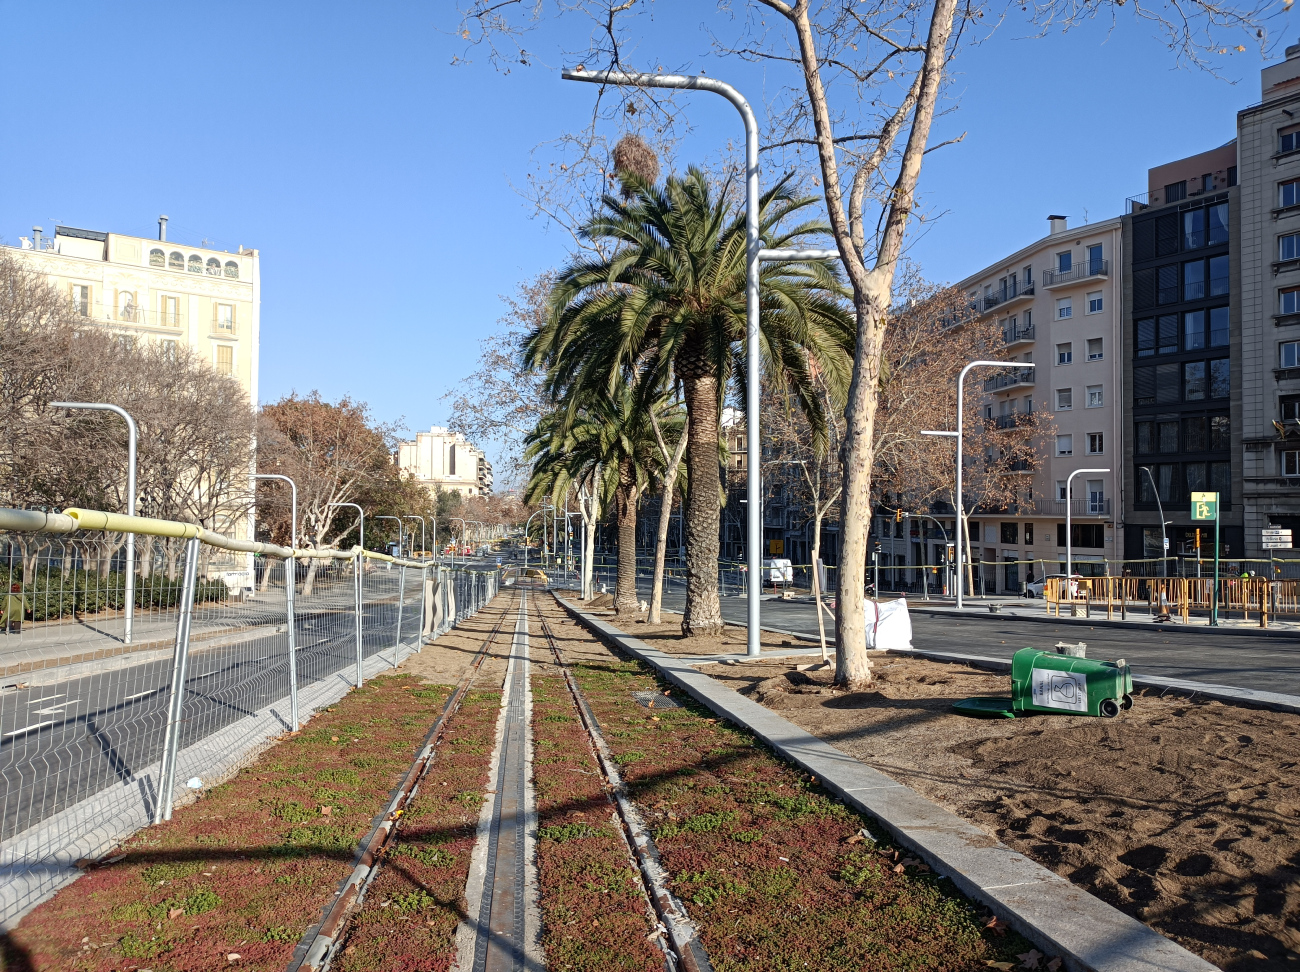 巴塞罗那 — Construction of the connection between the two tram lines on Diagonal